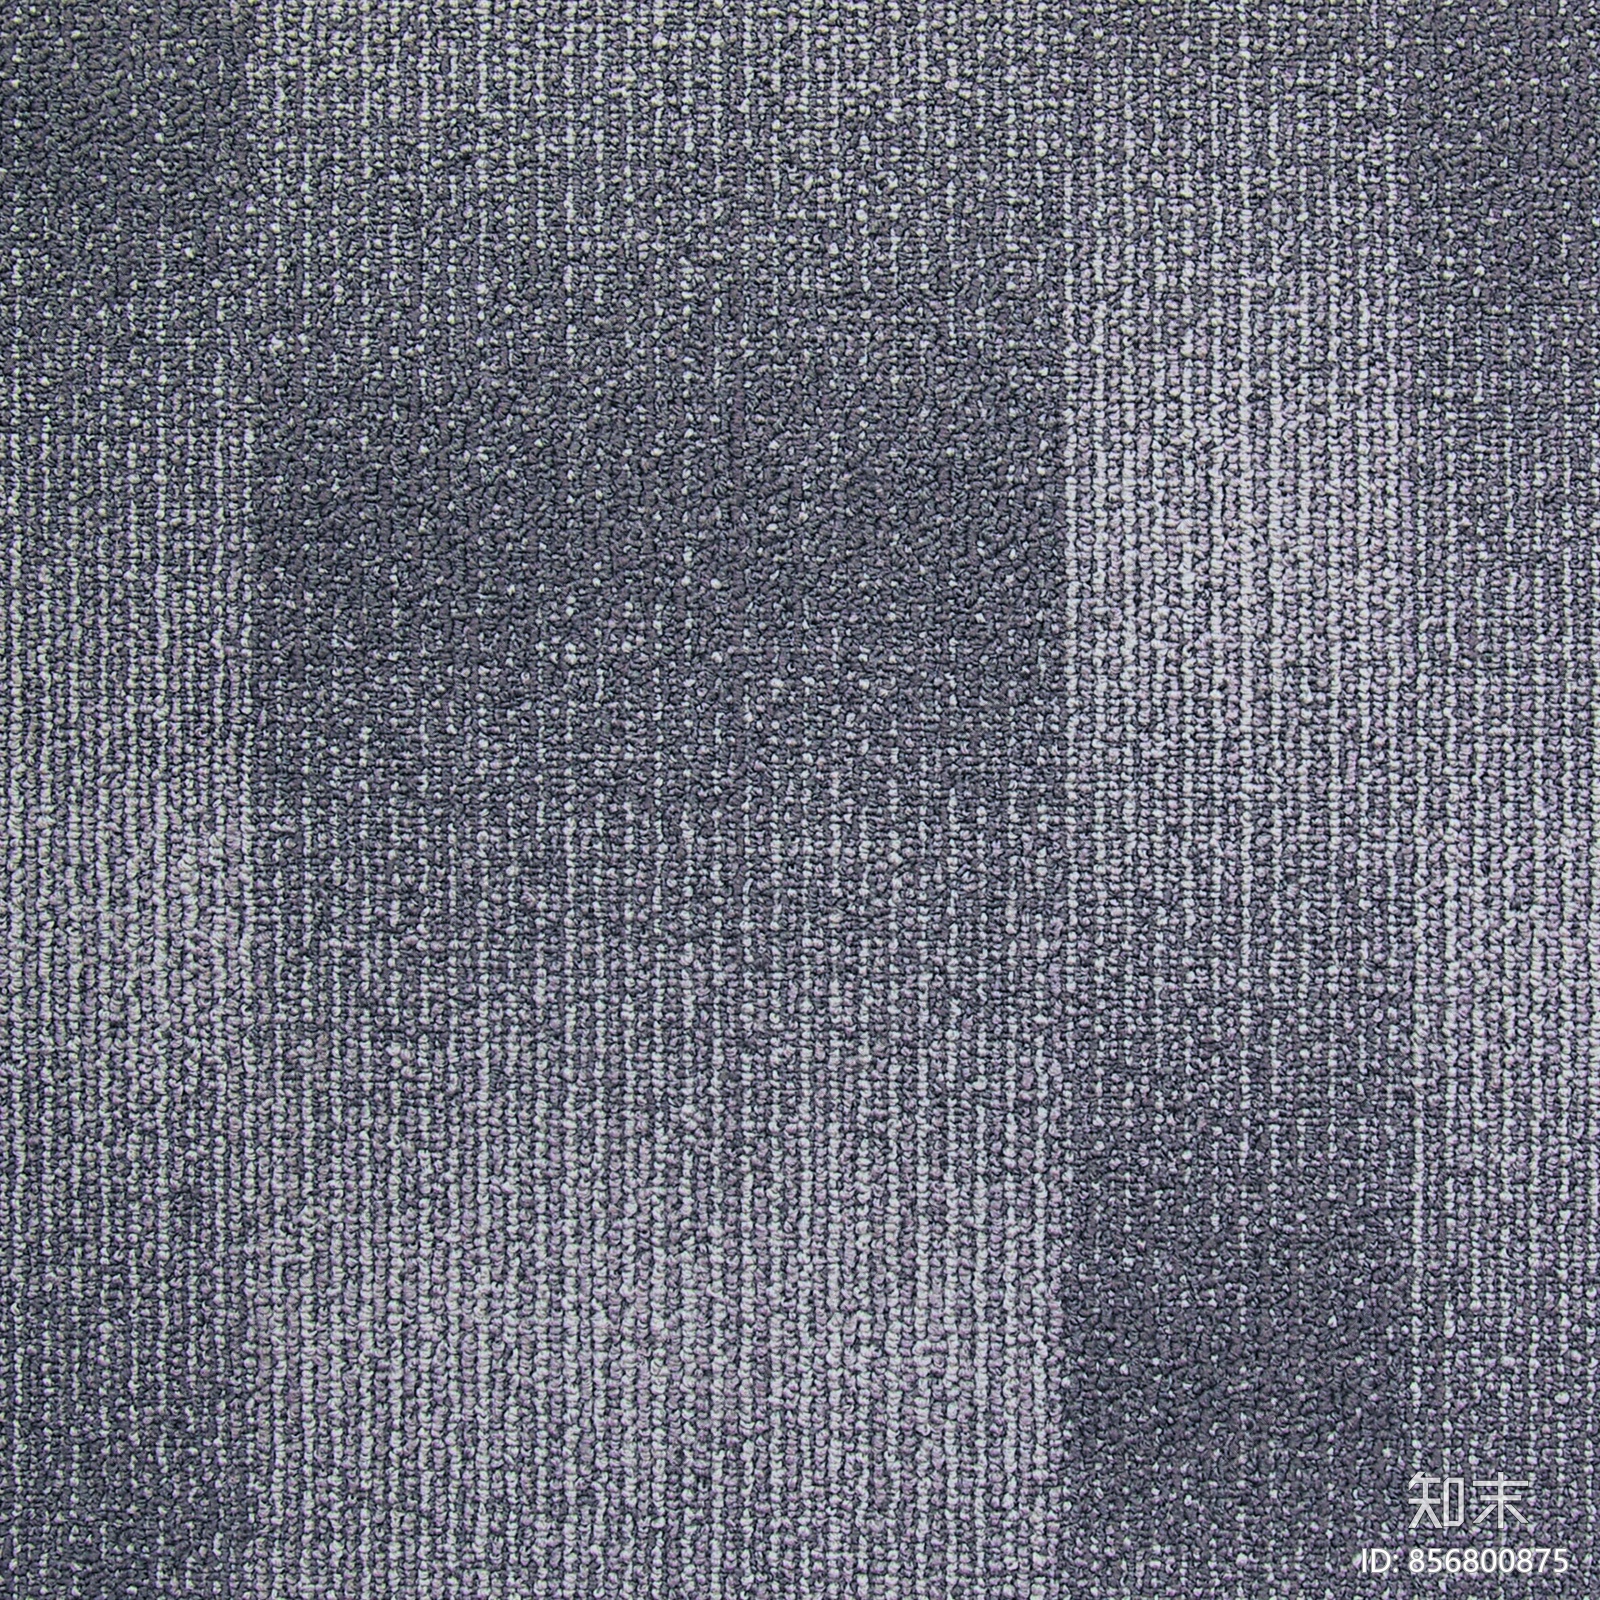 黑色地毯常用办公地毯贴图现代满铺地毯灰色 纯色 办公室地毯查看更多